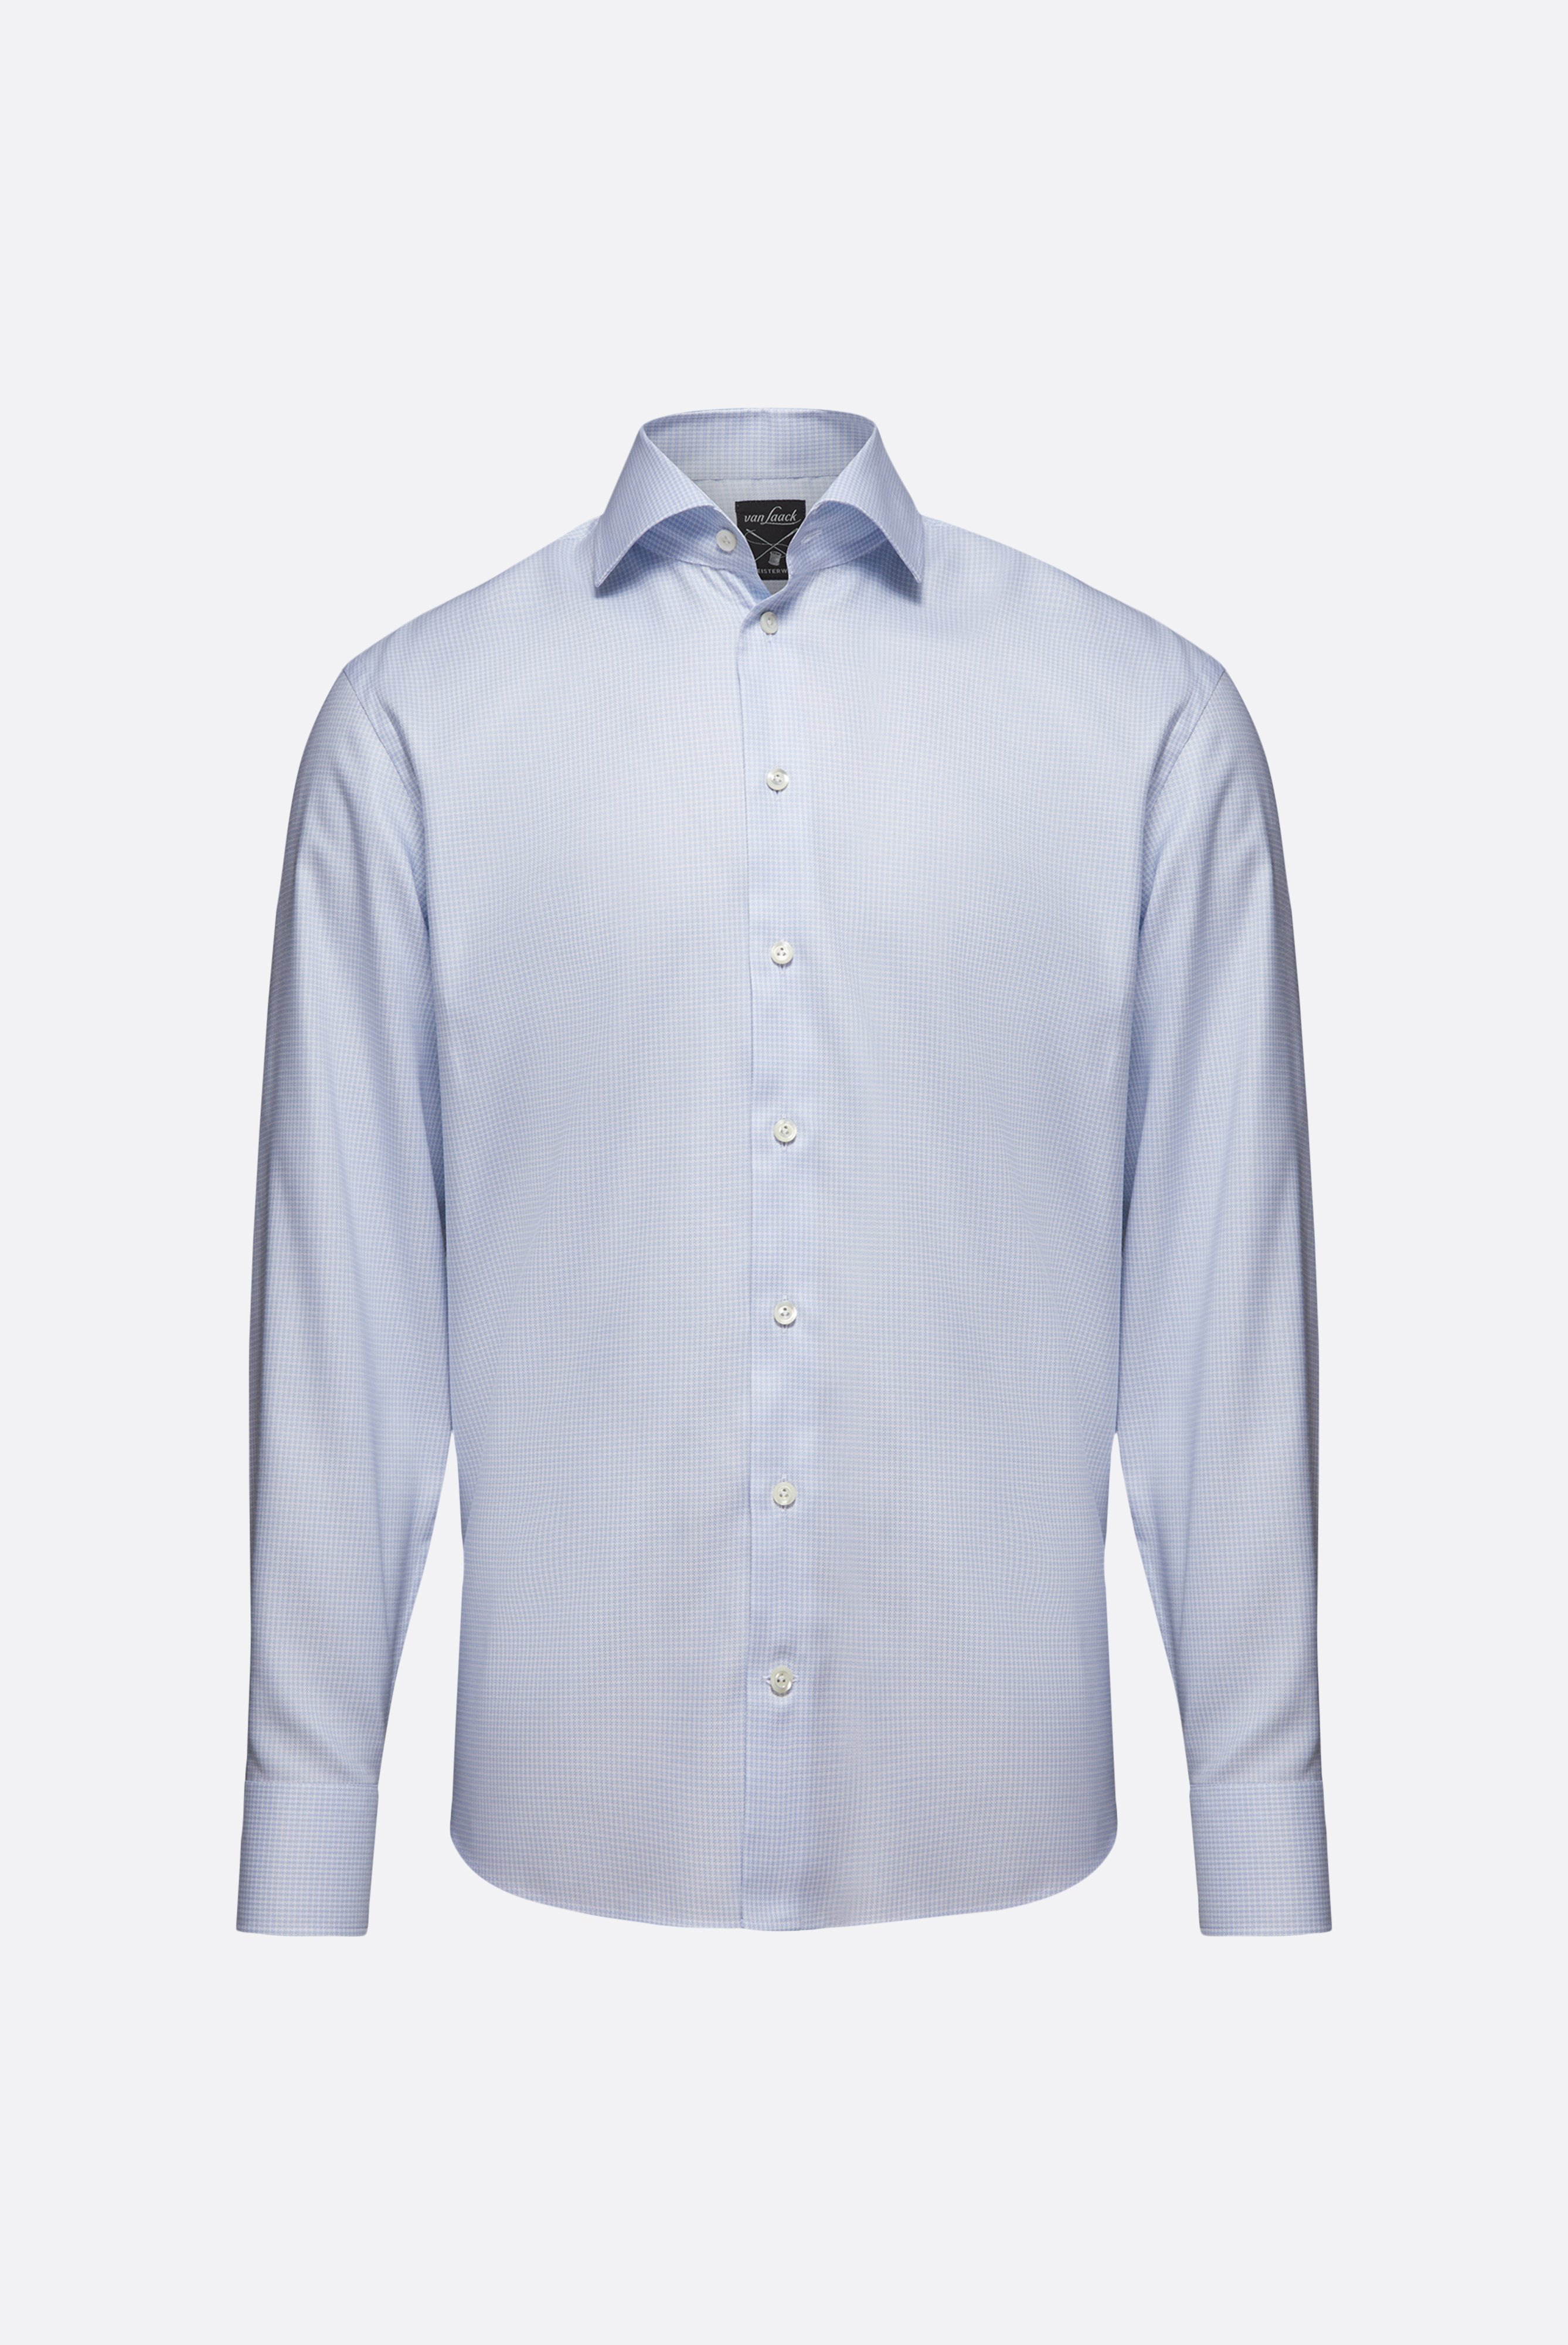 Bügelleichte Hemden+Bügelfreies Hemd mit Hahnentrittmuster Tailor Fit+20.2020.BQ.161101.720.38